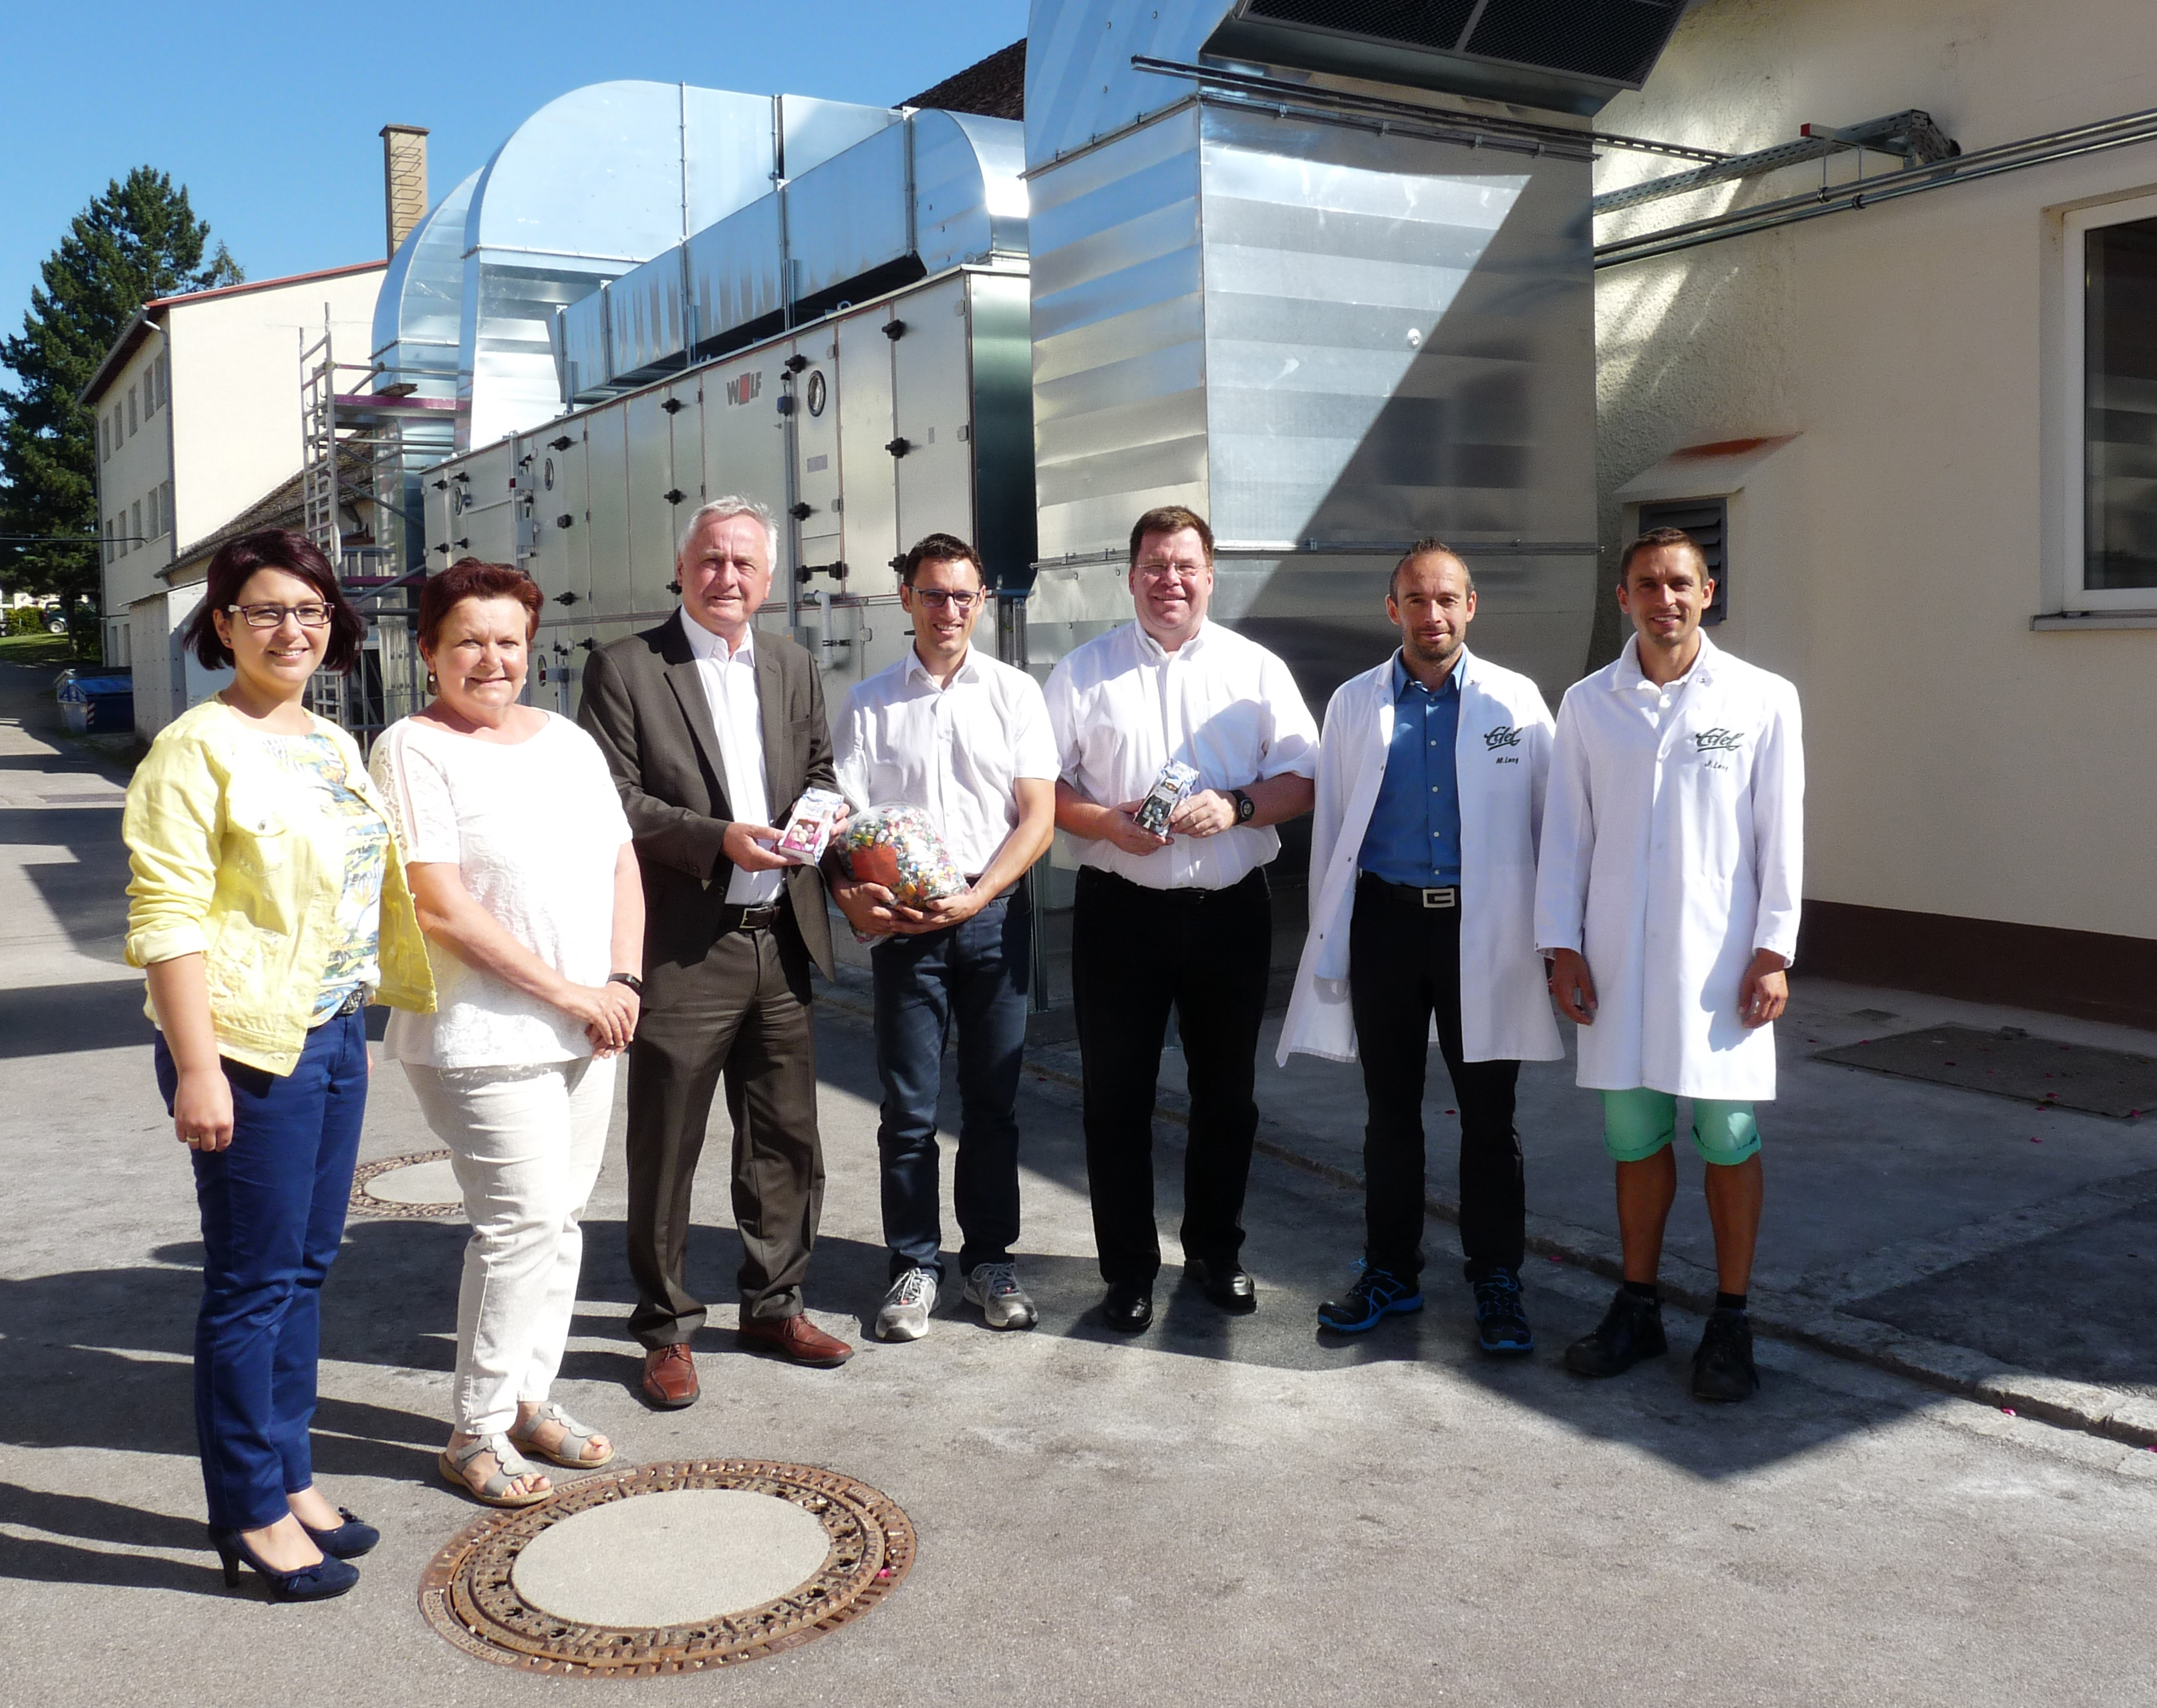 Süßes Donauwörth - Bezirkstagspräsident Reichert besucht mit der Bonbonfabrik Edel einen innovativen Mittelstandsbetrieb